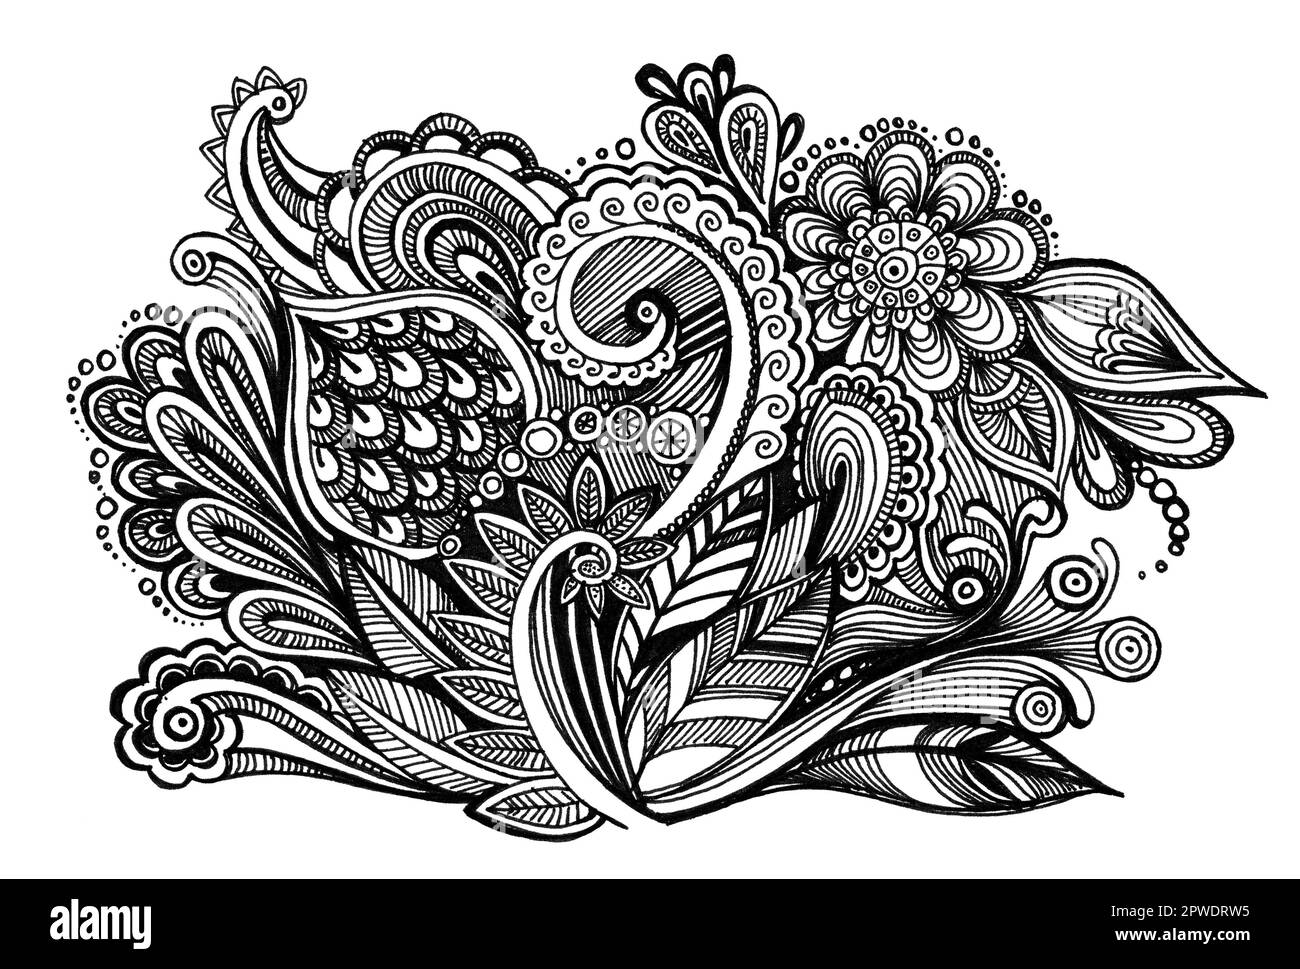 Dessin à la main motif floral, fleurs monochromes sur fond blanc, gribouillage pour textil, mariage, couleur noir et blanc Banque D'Images